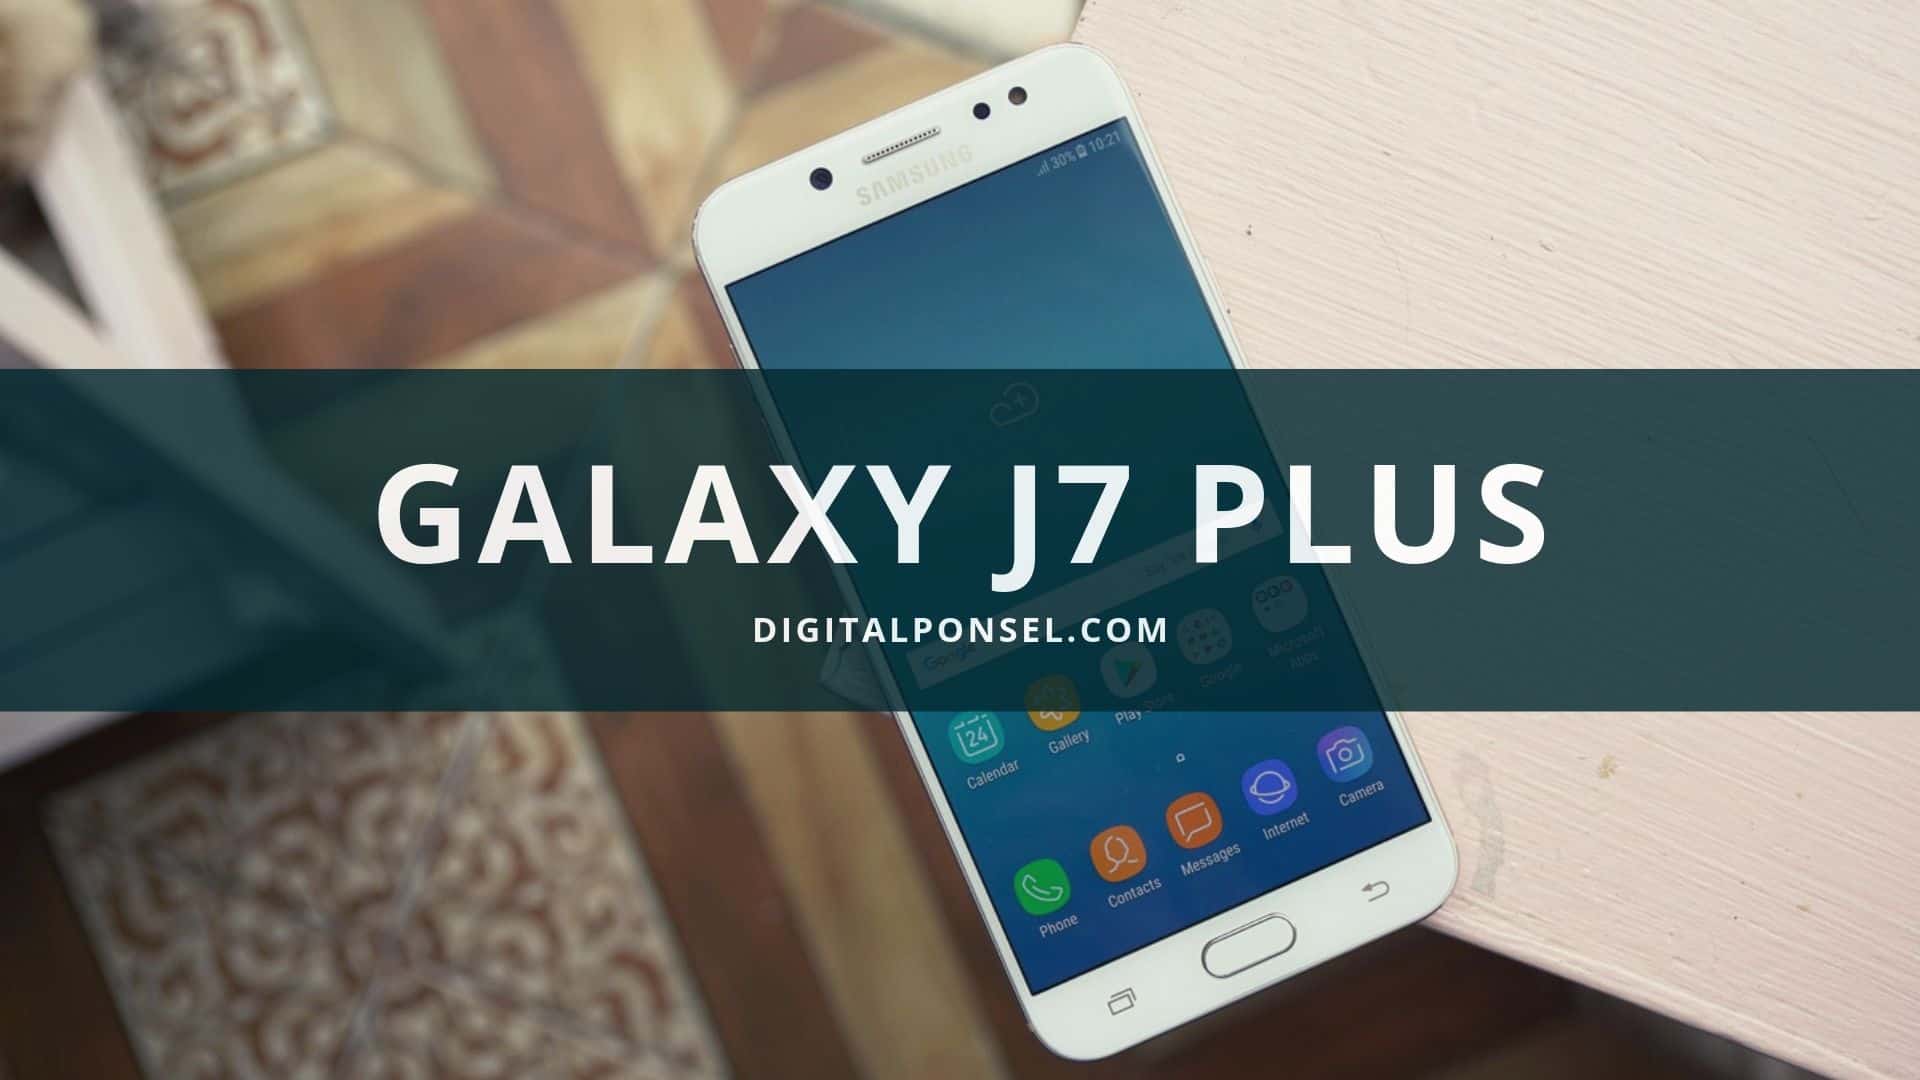 Harga Samsung Galaxy J7 Plus Terbaru dan Spesifikasi 